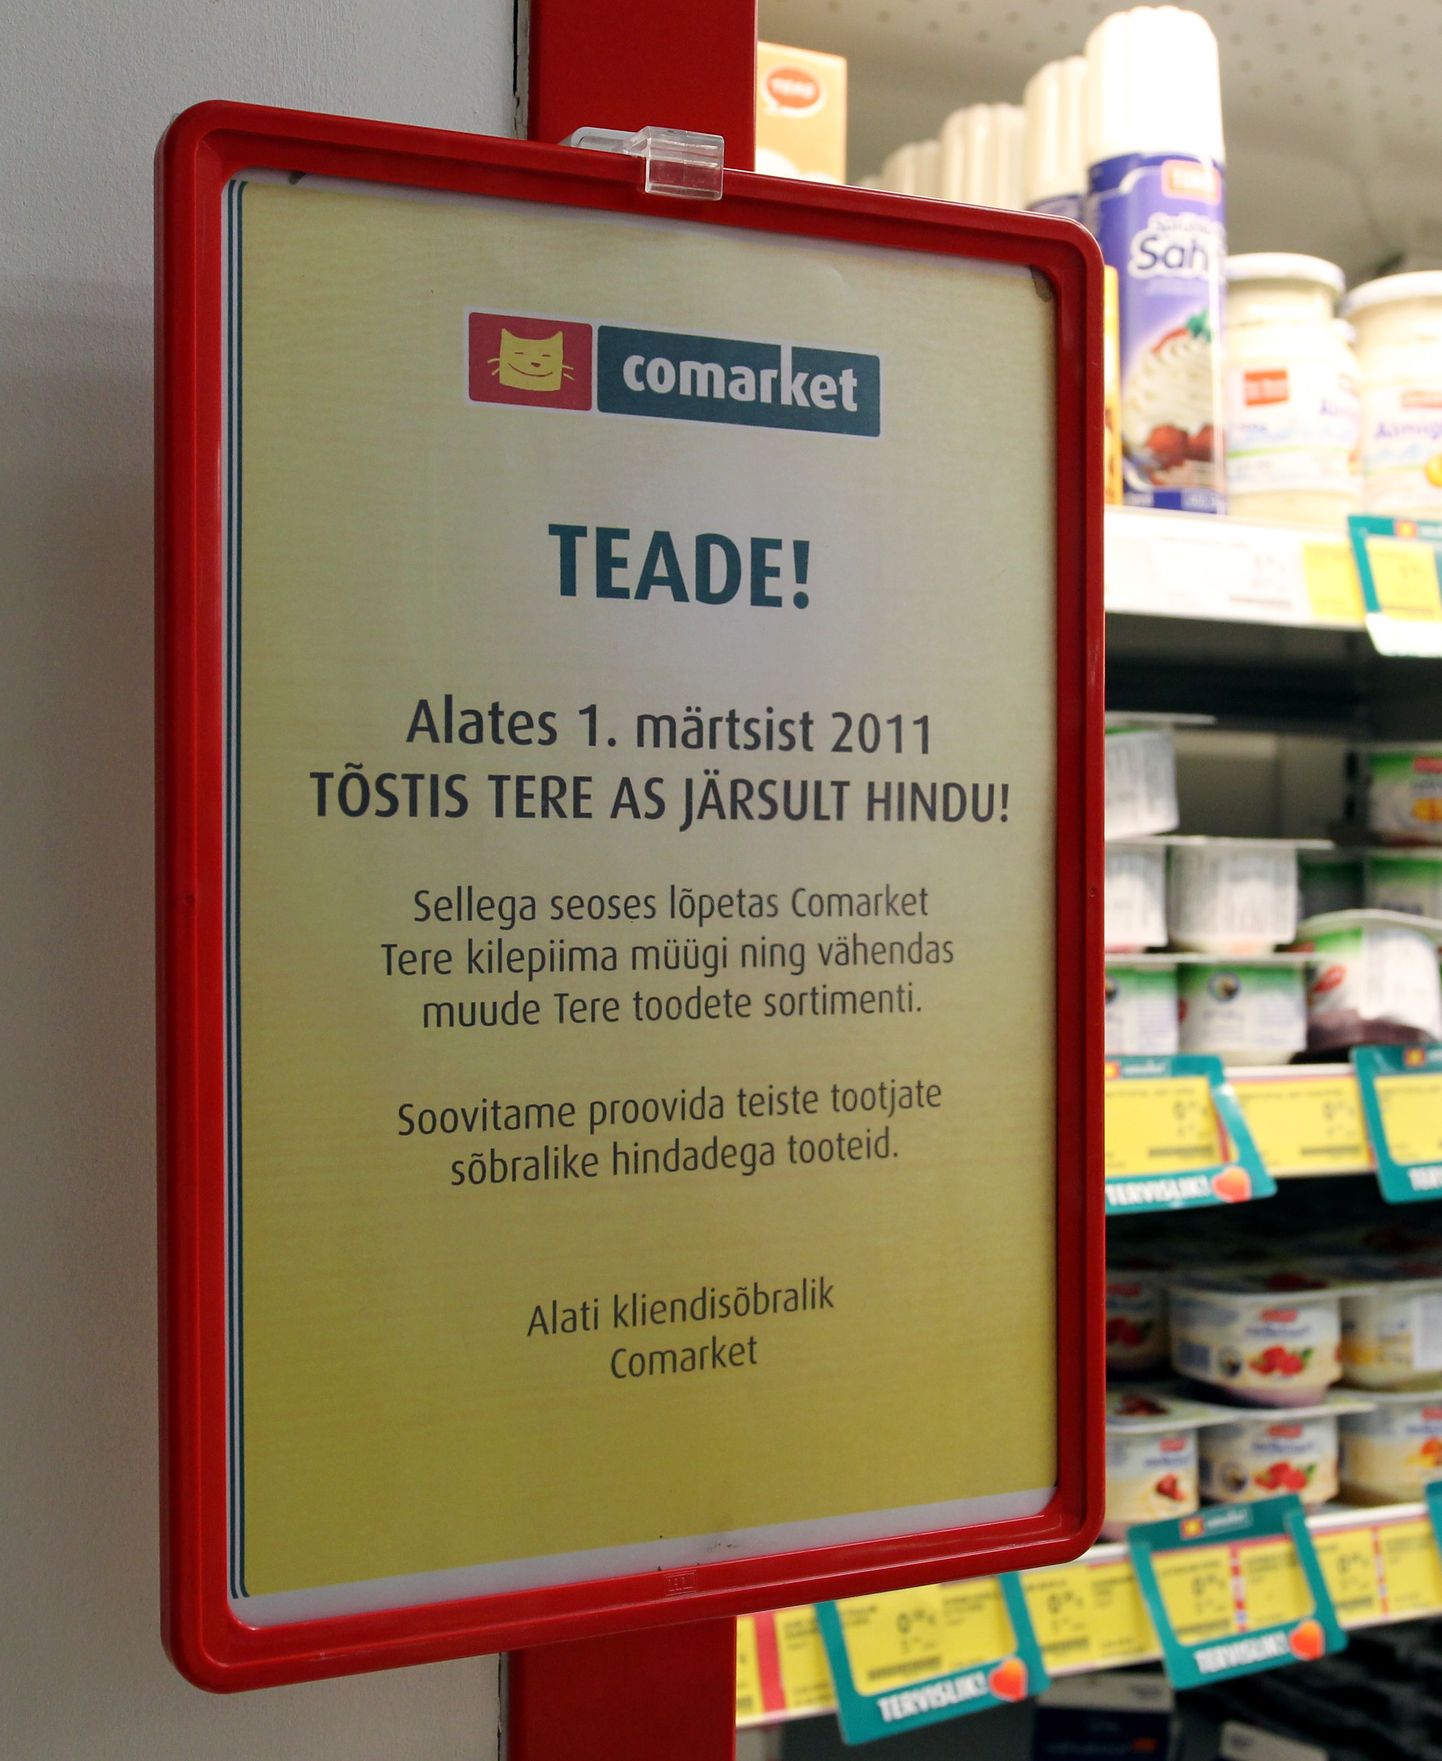 Объявление в магазине Comarket, извещающее о том, что с 1-го марта компания Tere резко подняла цены на свою продукцию.